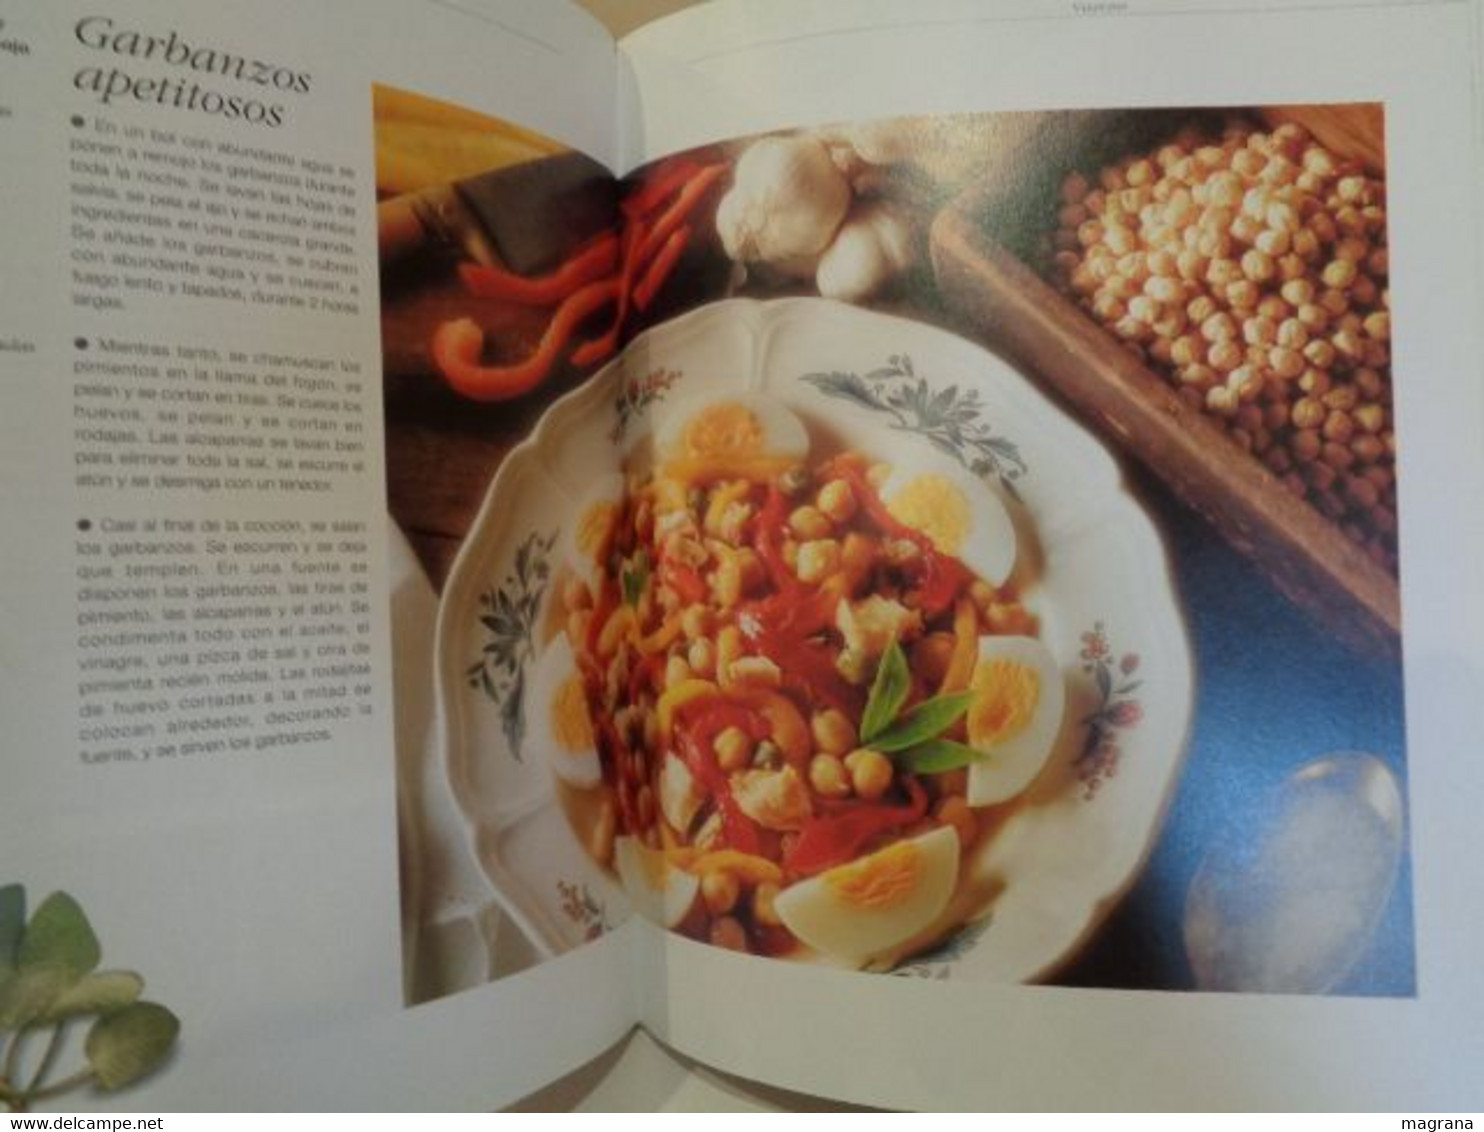 Cocina Saludable. Más de 400 recetas basadas en la dieta Mediterránea. Ed. Everest. 2002. 383 pp.